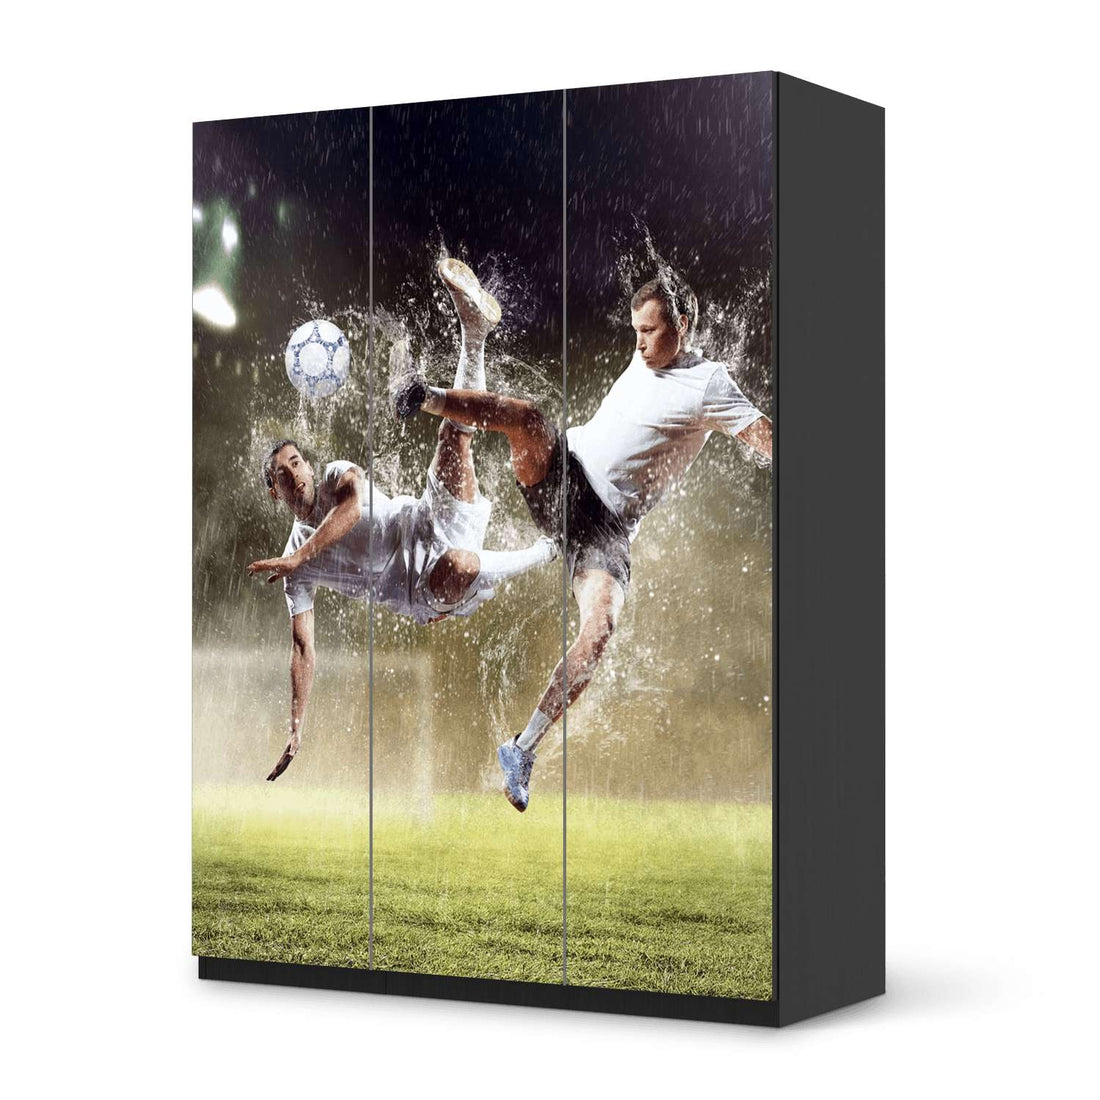 Folie für Möbel Soccer - IKEA Pax Schrank 201 cm Höhe - 3 Türen - schwarz